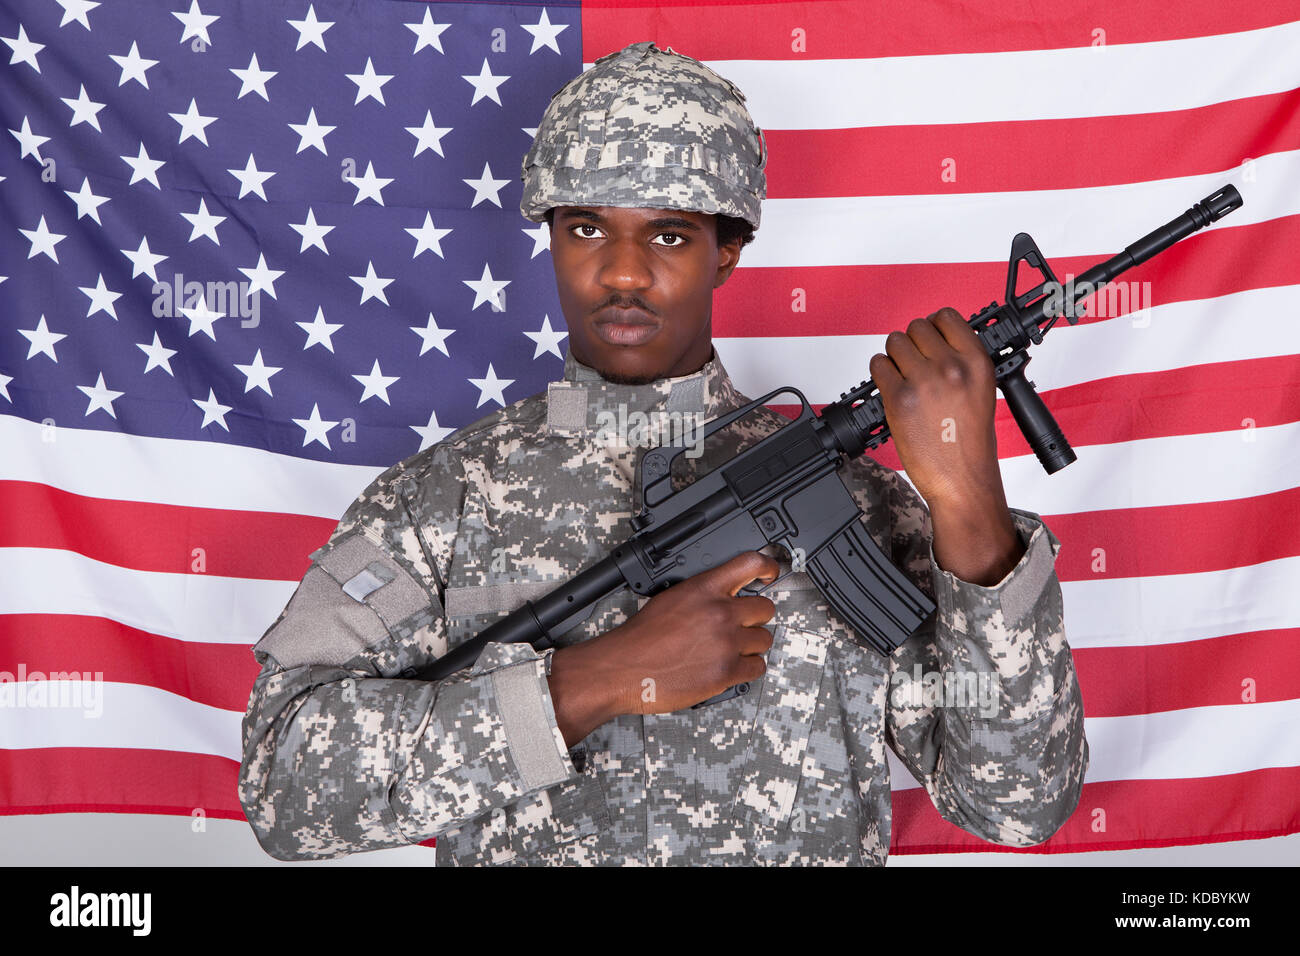 Soldat afro-américain des armes à feu avec standing in front of us flag Banque D'Images